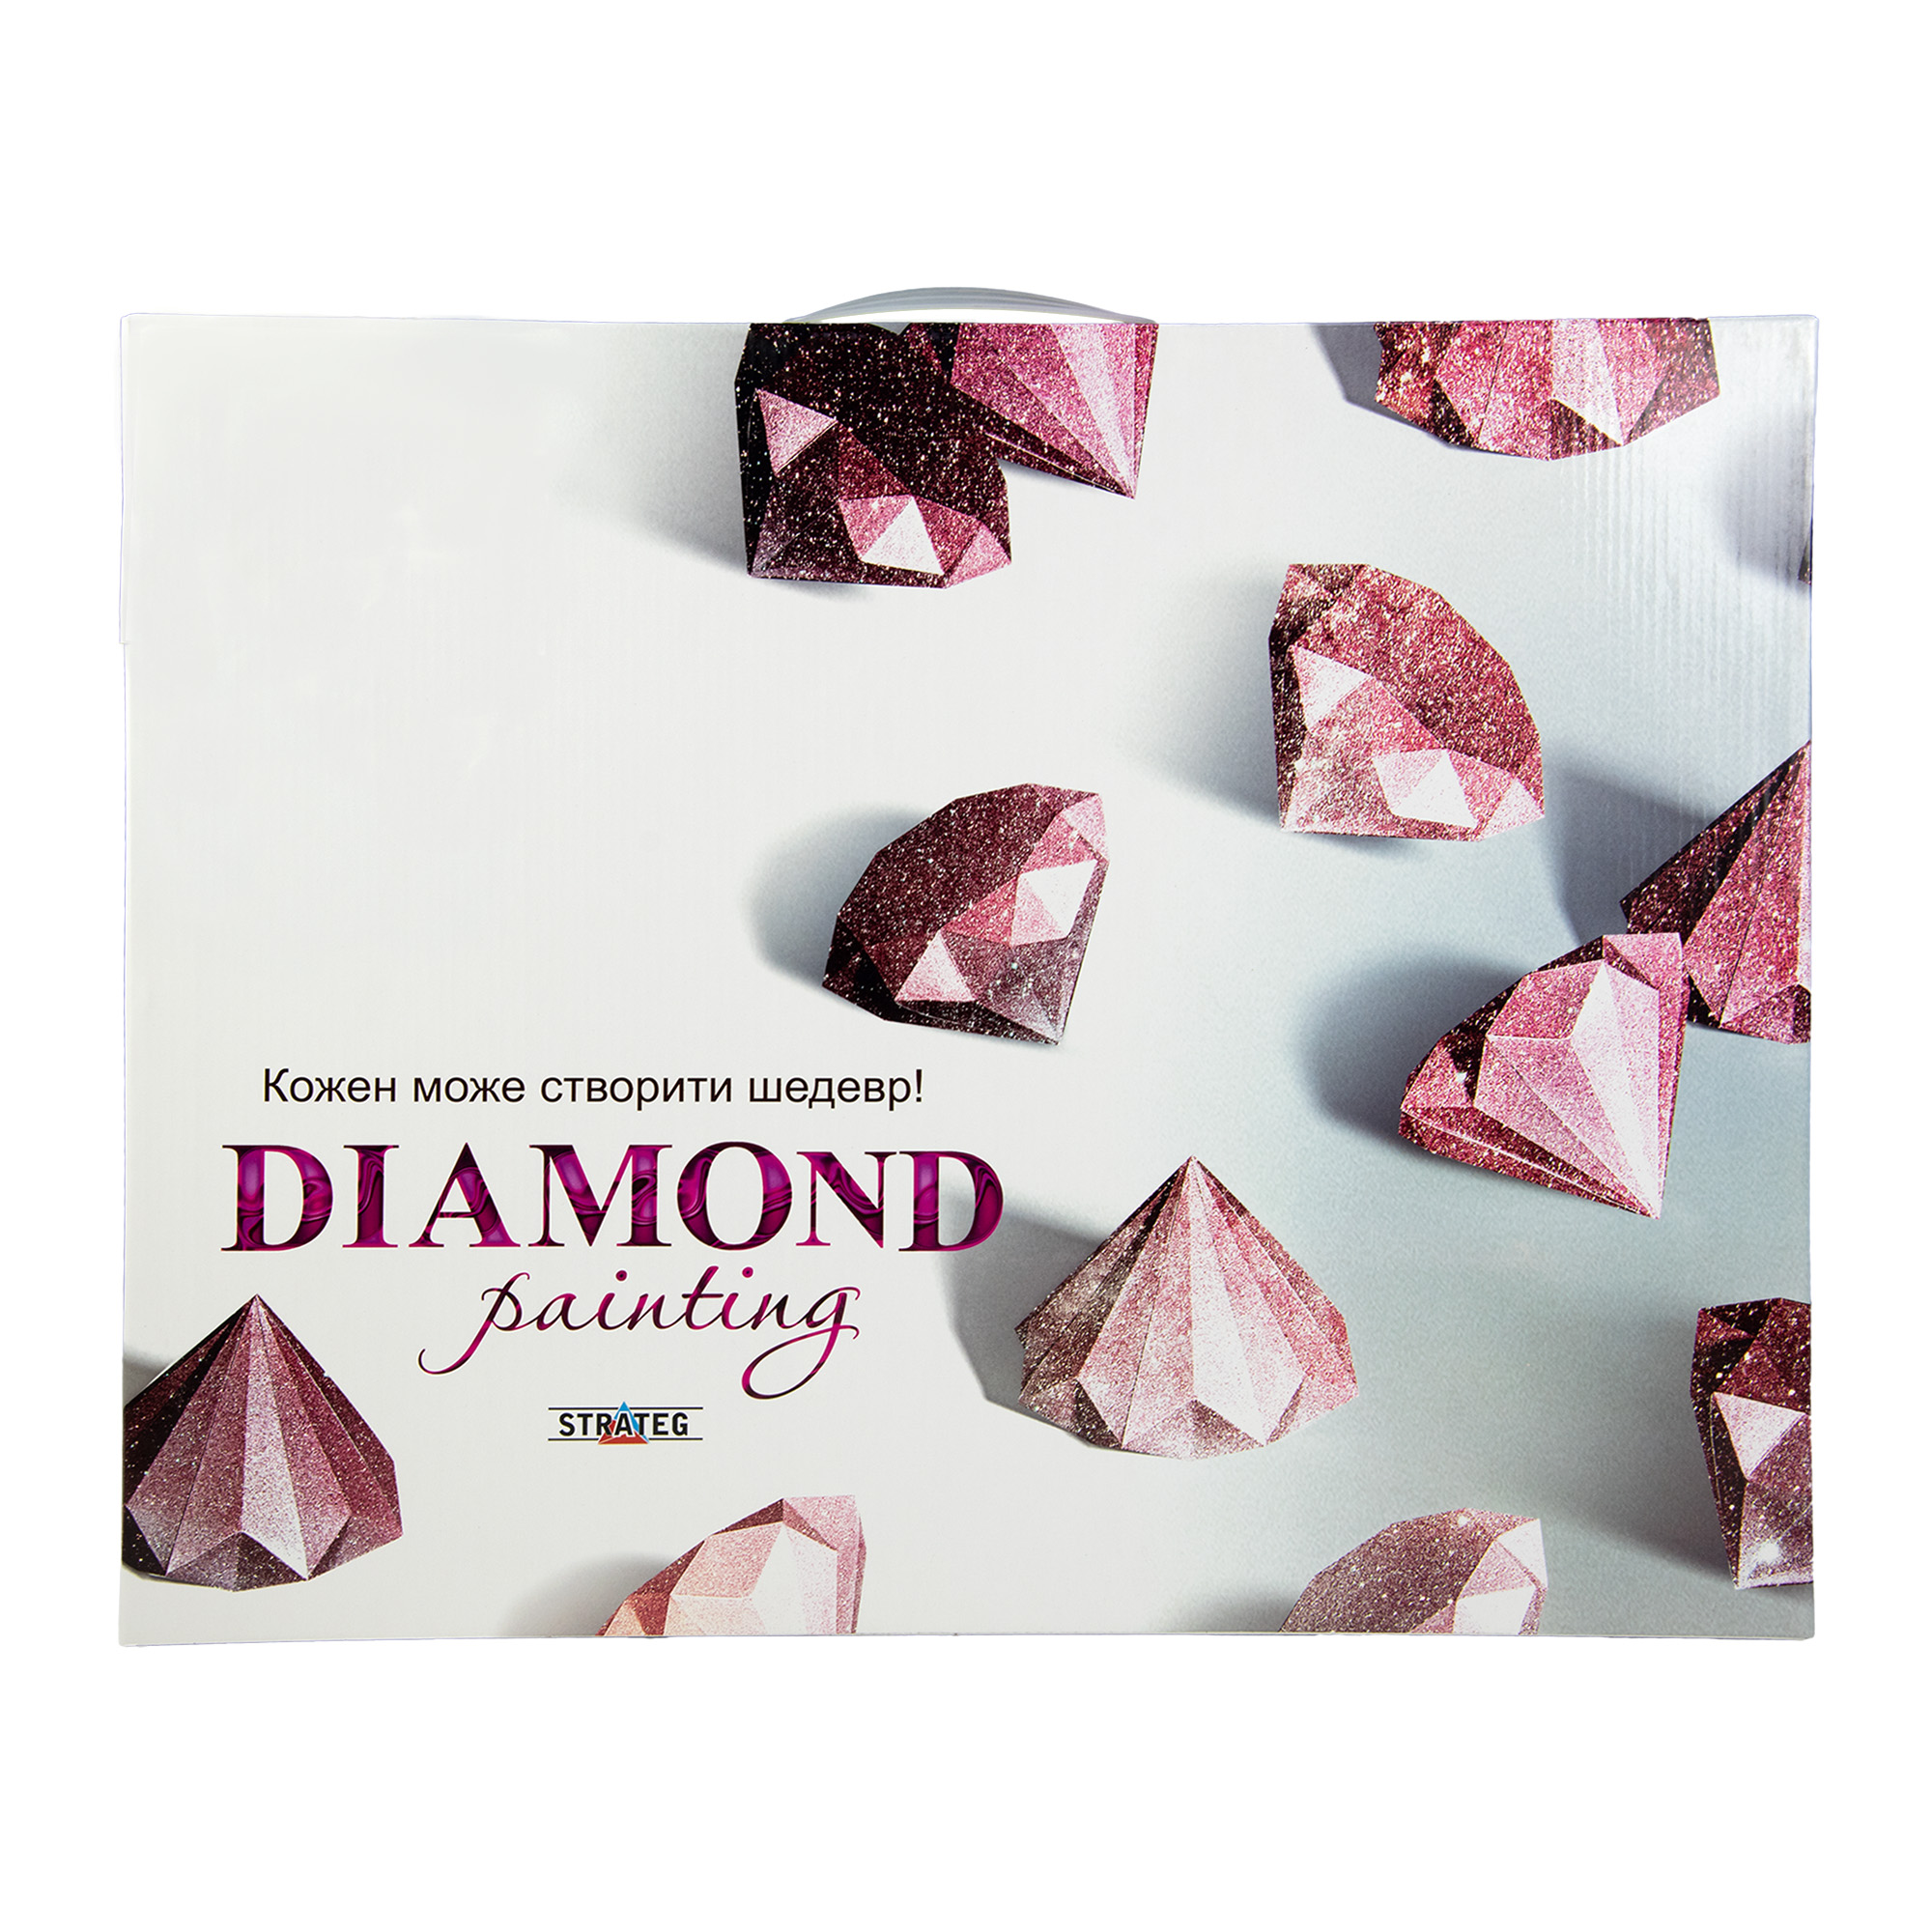 Diamantmosaik Strateg PREMIUM Niedliche Zwerge des Valentinsgrußes, Größe 40x50 cm (SK86017)